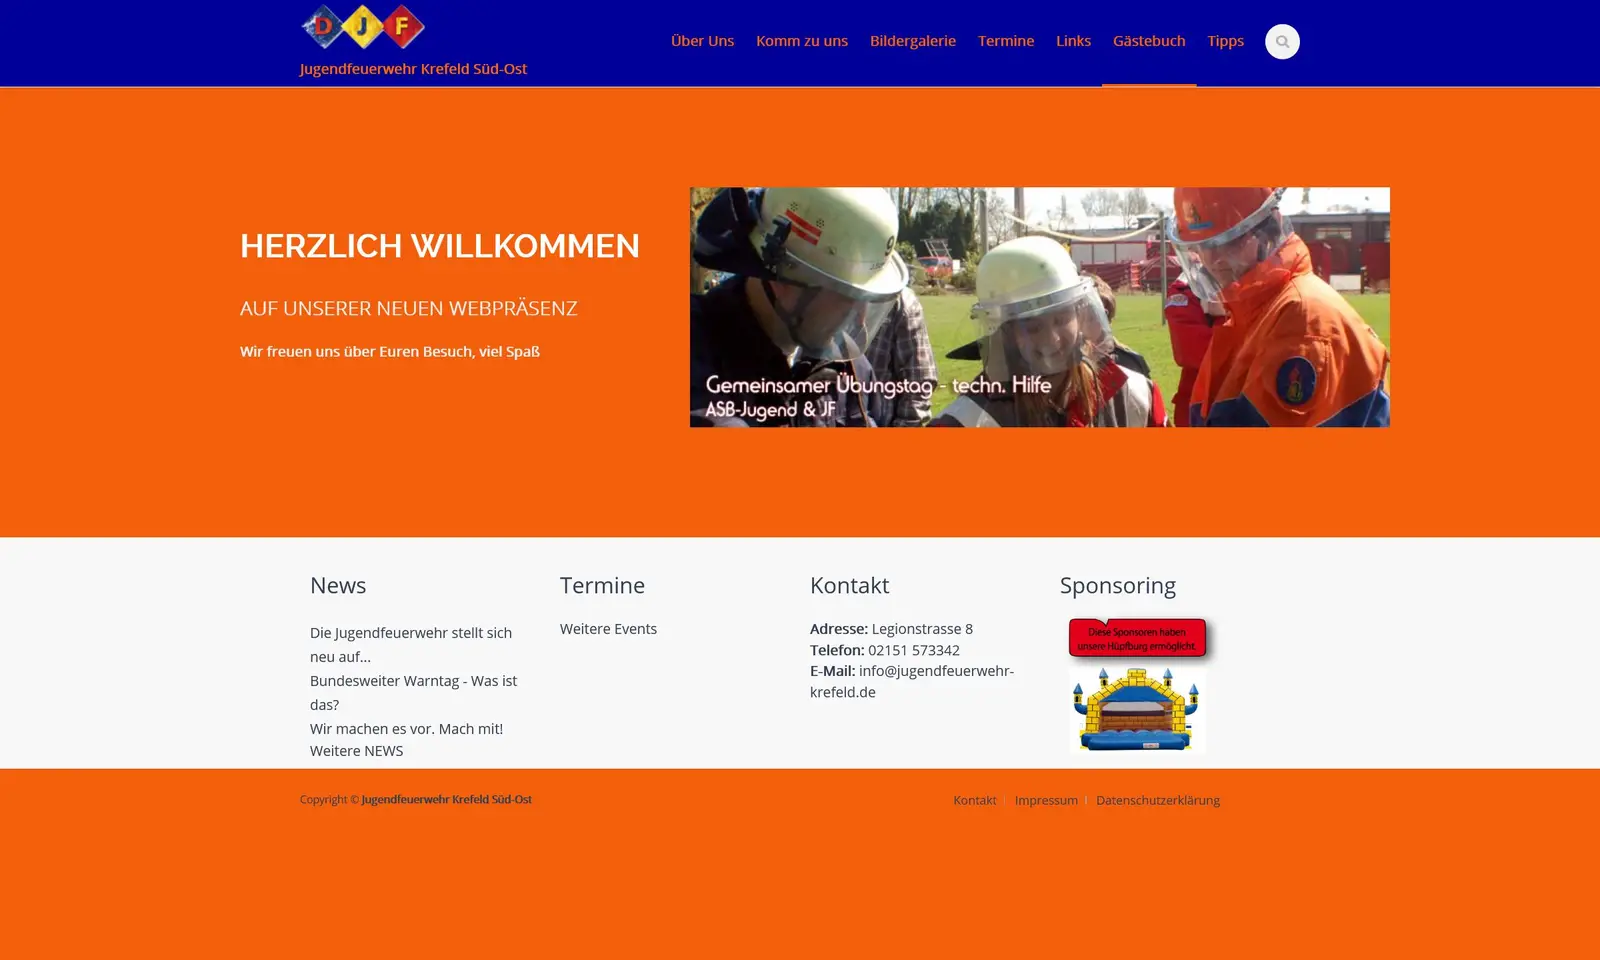 Screenshot von der Webseite "Jugenfeuerwehr Krefeld Süd-Ost"